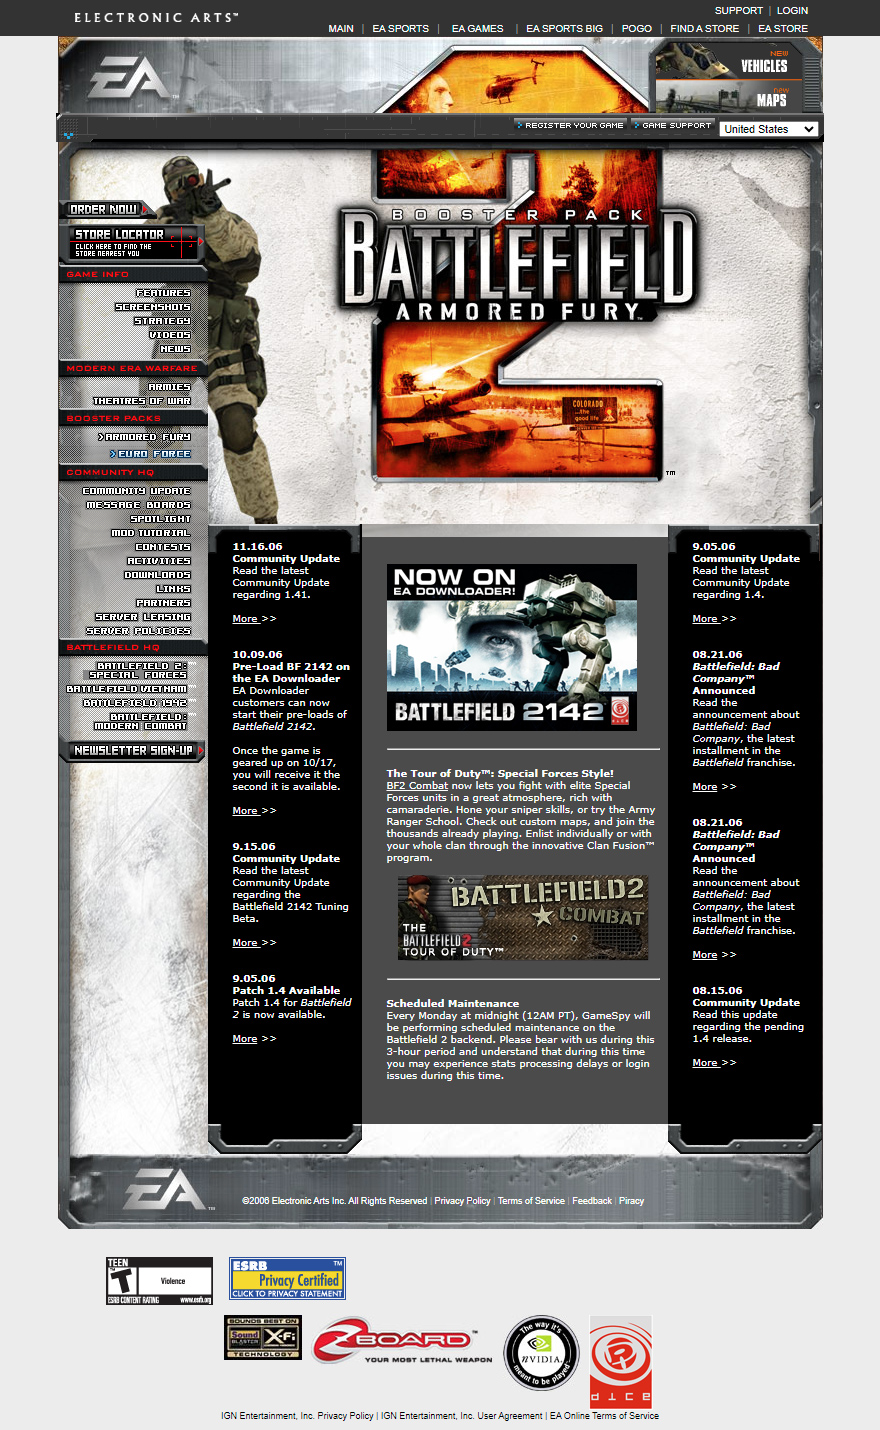 Battlefield 2 in 2006